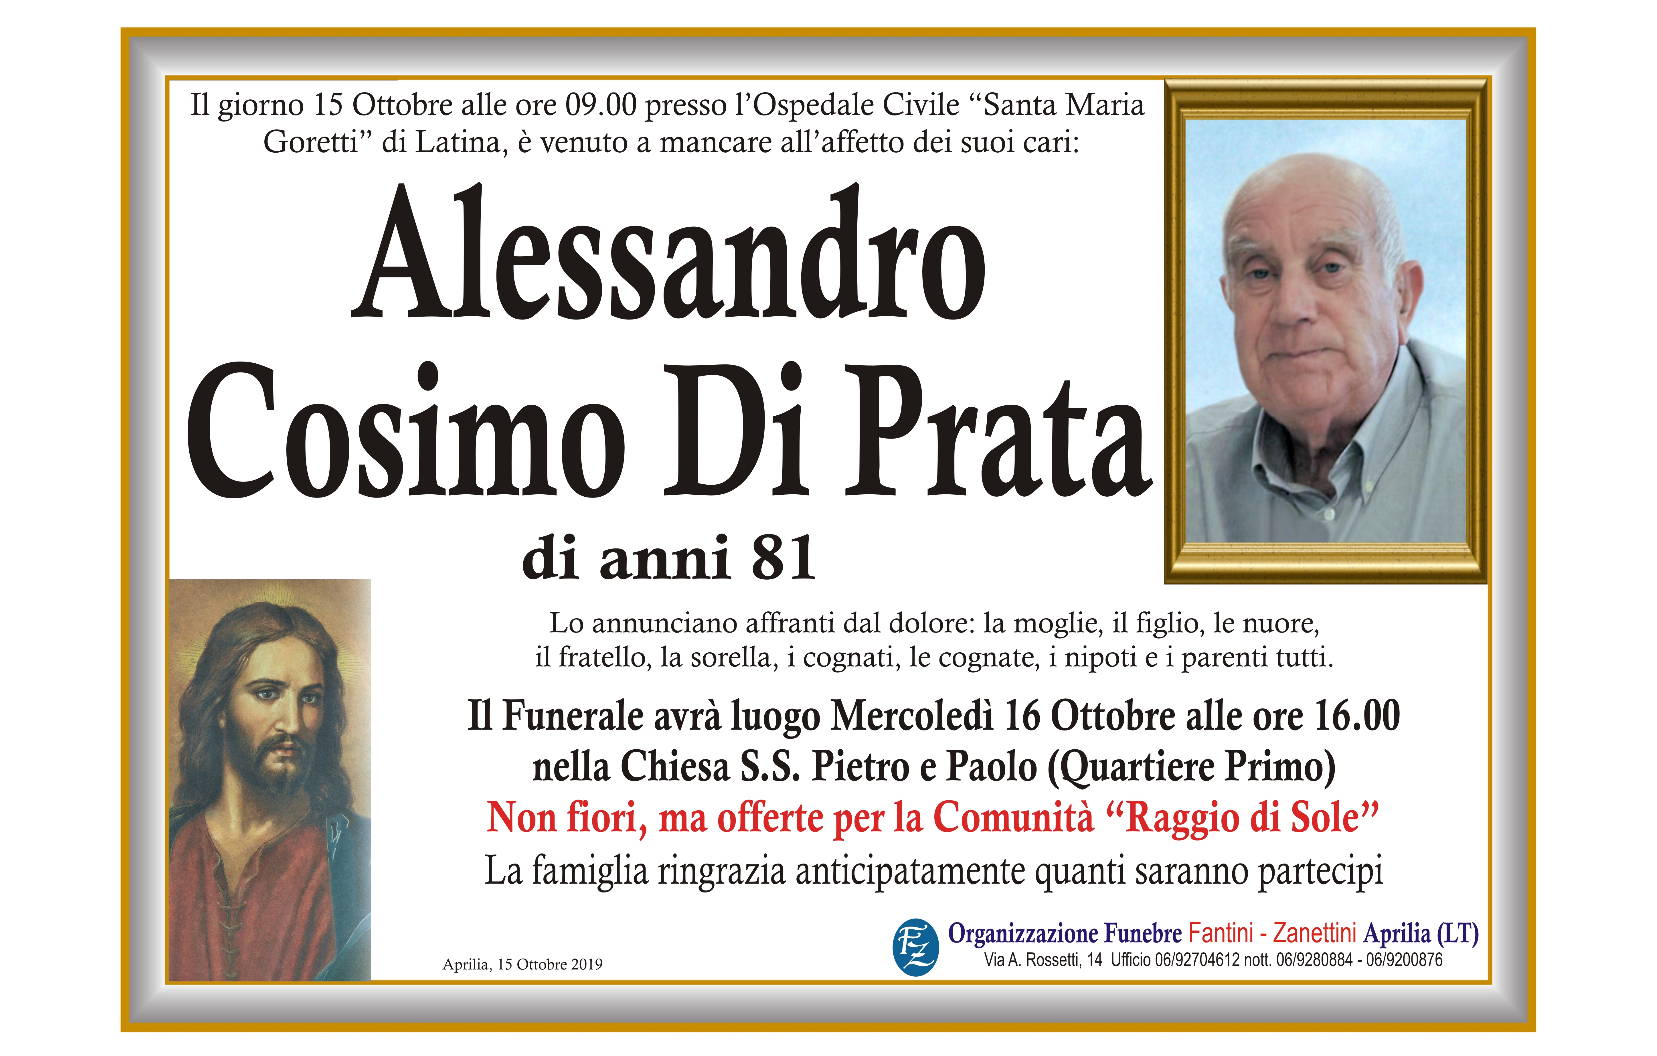 Alessandro Cosimo Di Prata